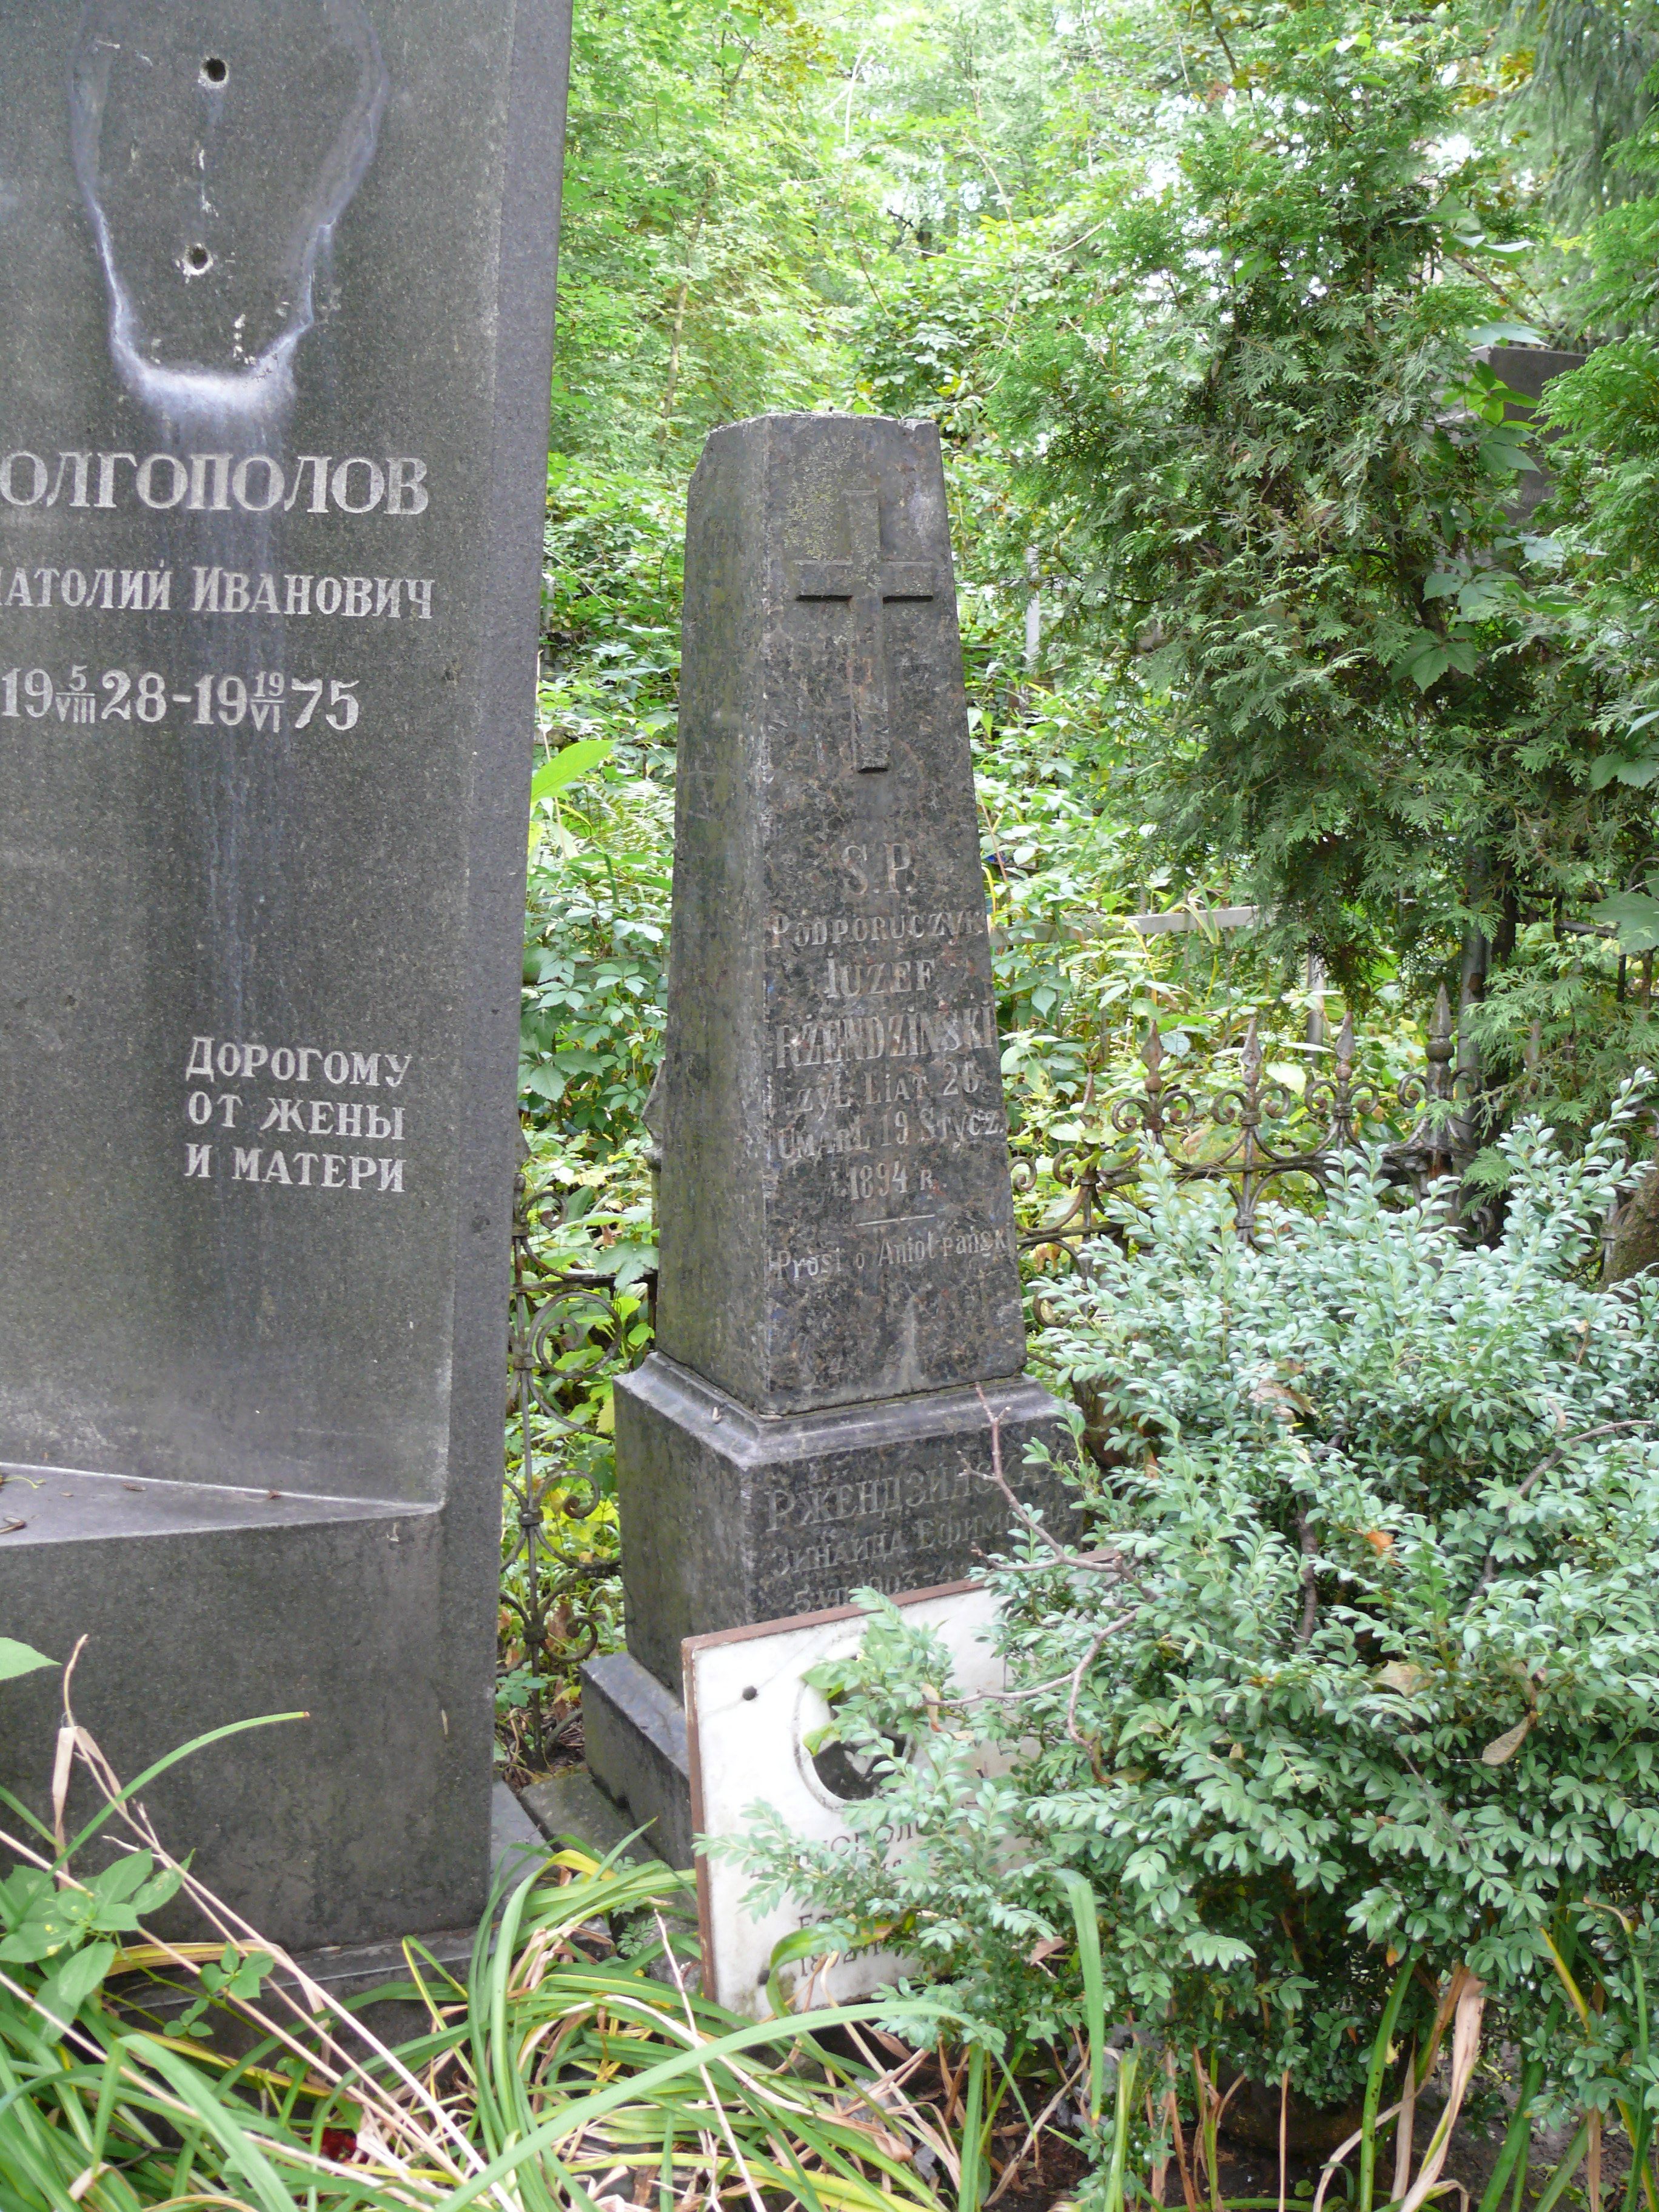 Tombstone of Józef Rżendziński